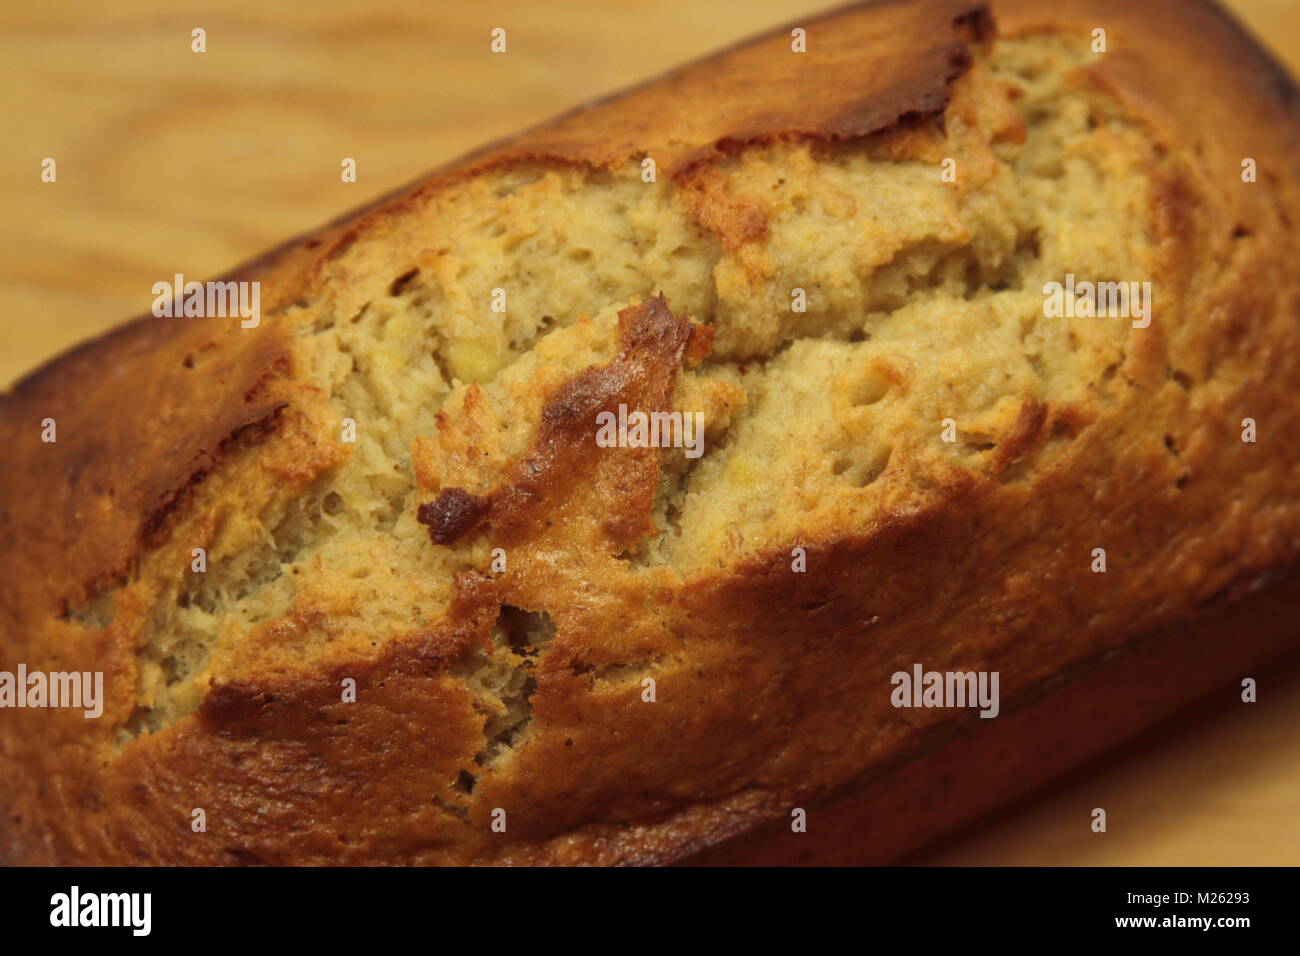 Fresh baked banana bread with banana chunks, close up Stock Photo